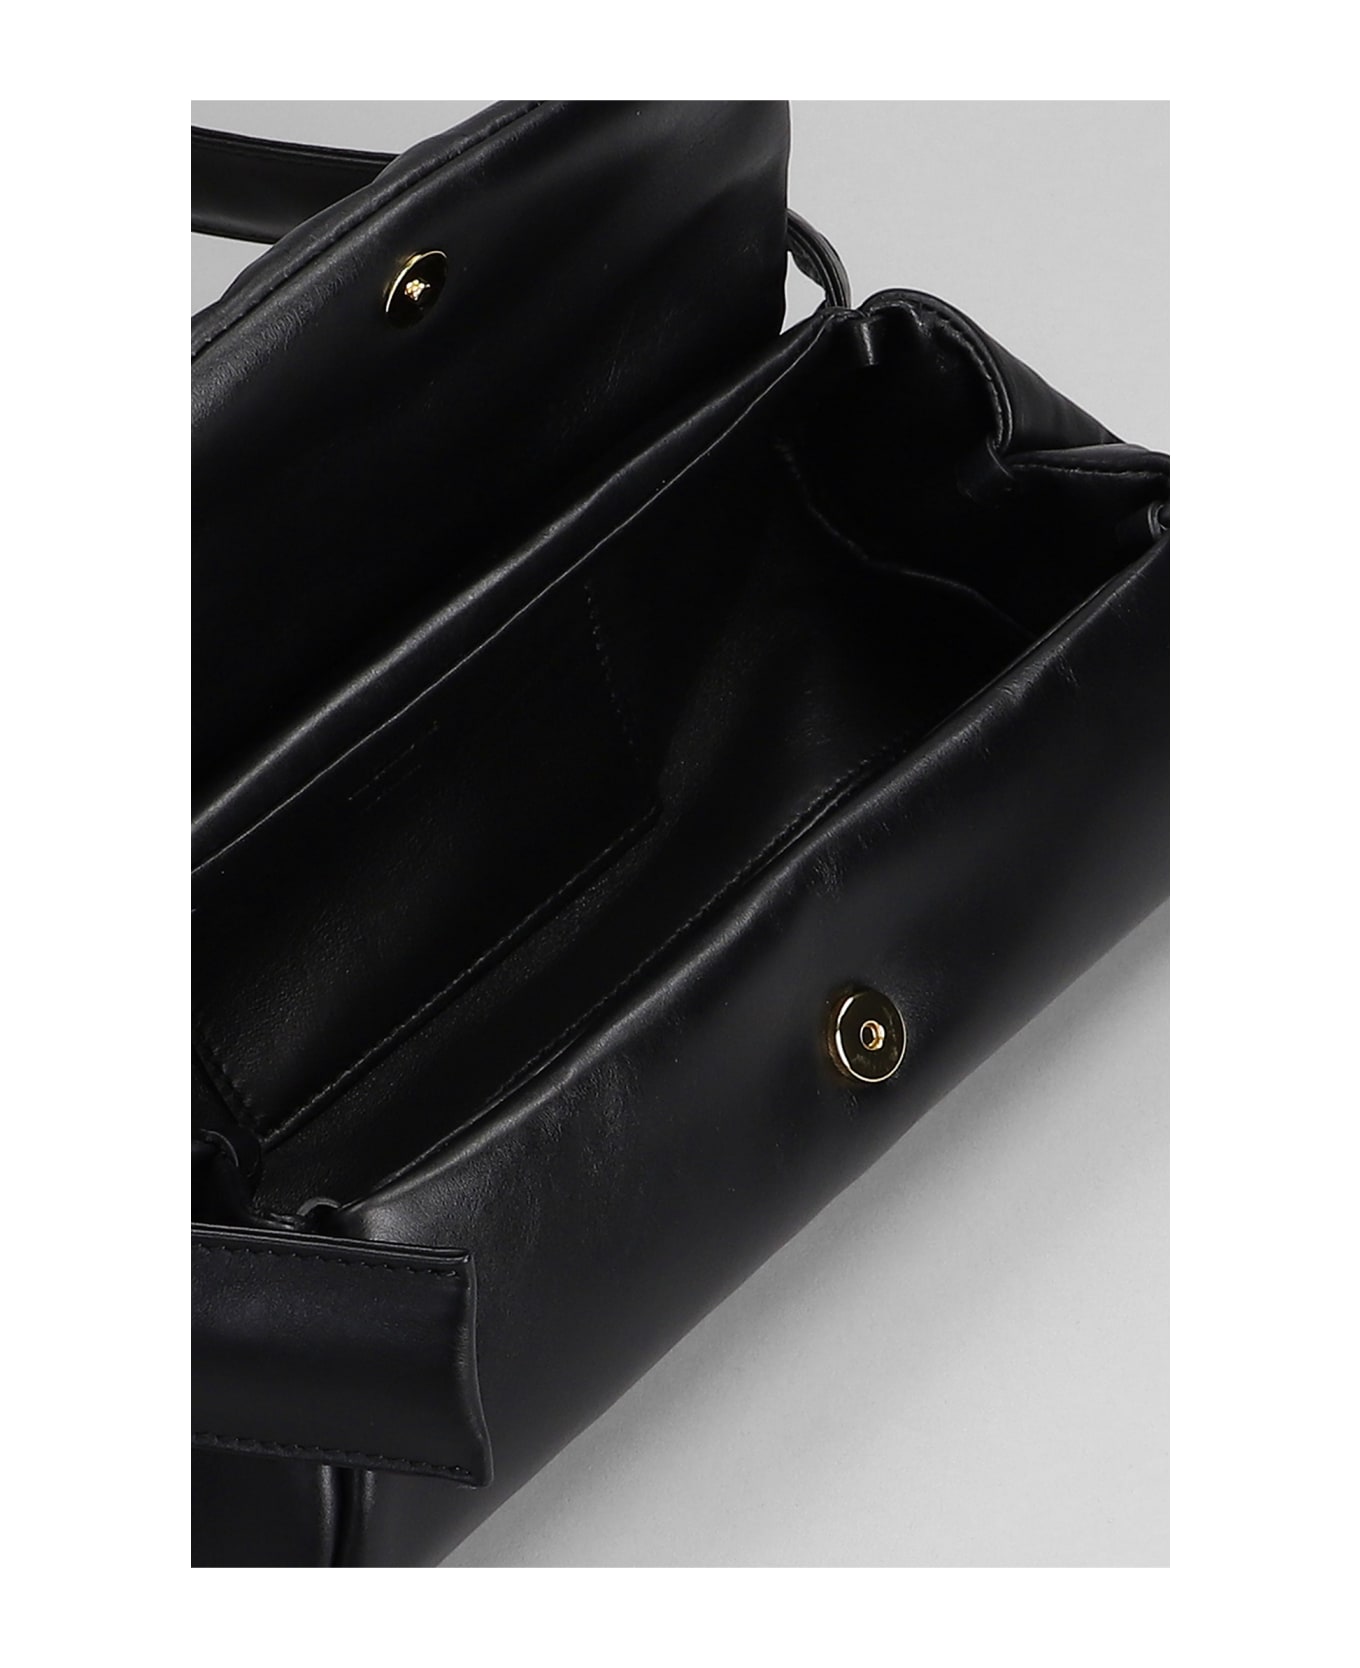 Jil Sander Cannolo Piccolo Shoulder Bag In Black Leather - Black